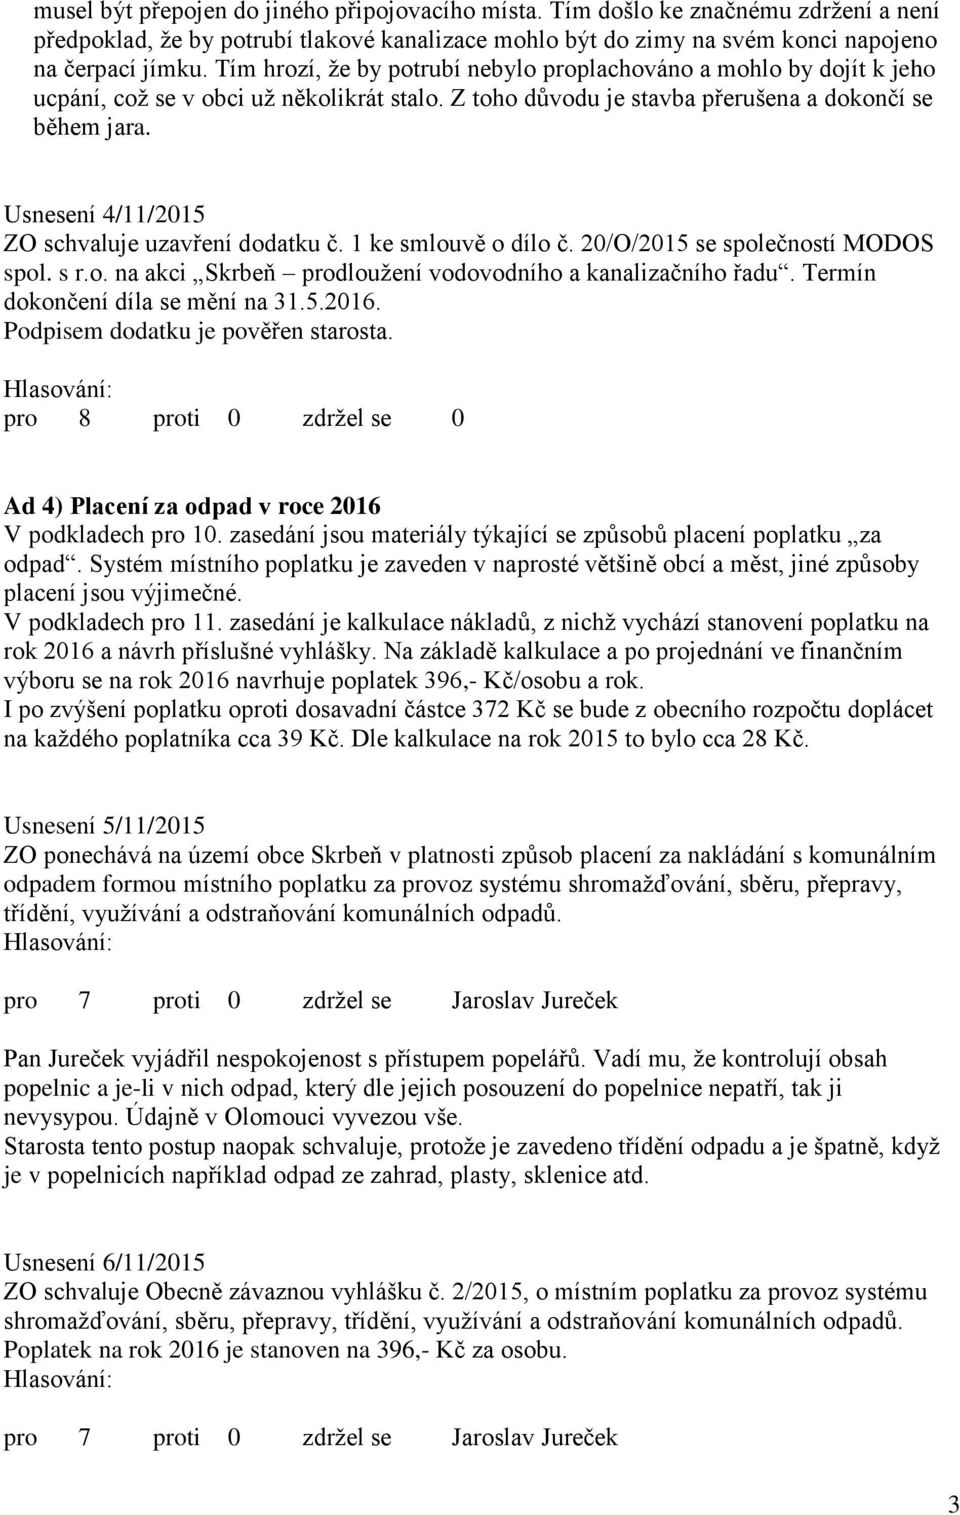 Usnesení 4/11/2015 ZO schvaluje uzavření dodatku č. 1 ke smlouvě o dílo č. 20/O/2015 se společností MODOS spol. s r.o. na akci Skrbeň prodloužení vodovodního a kanalizačního řadu.